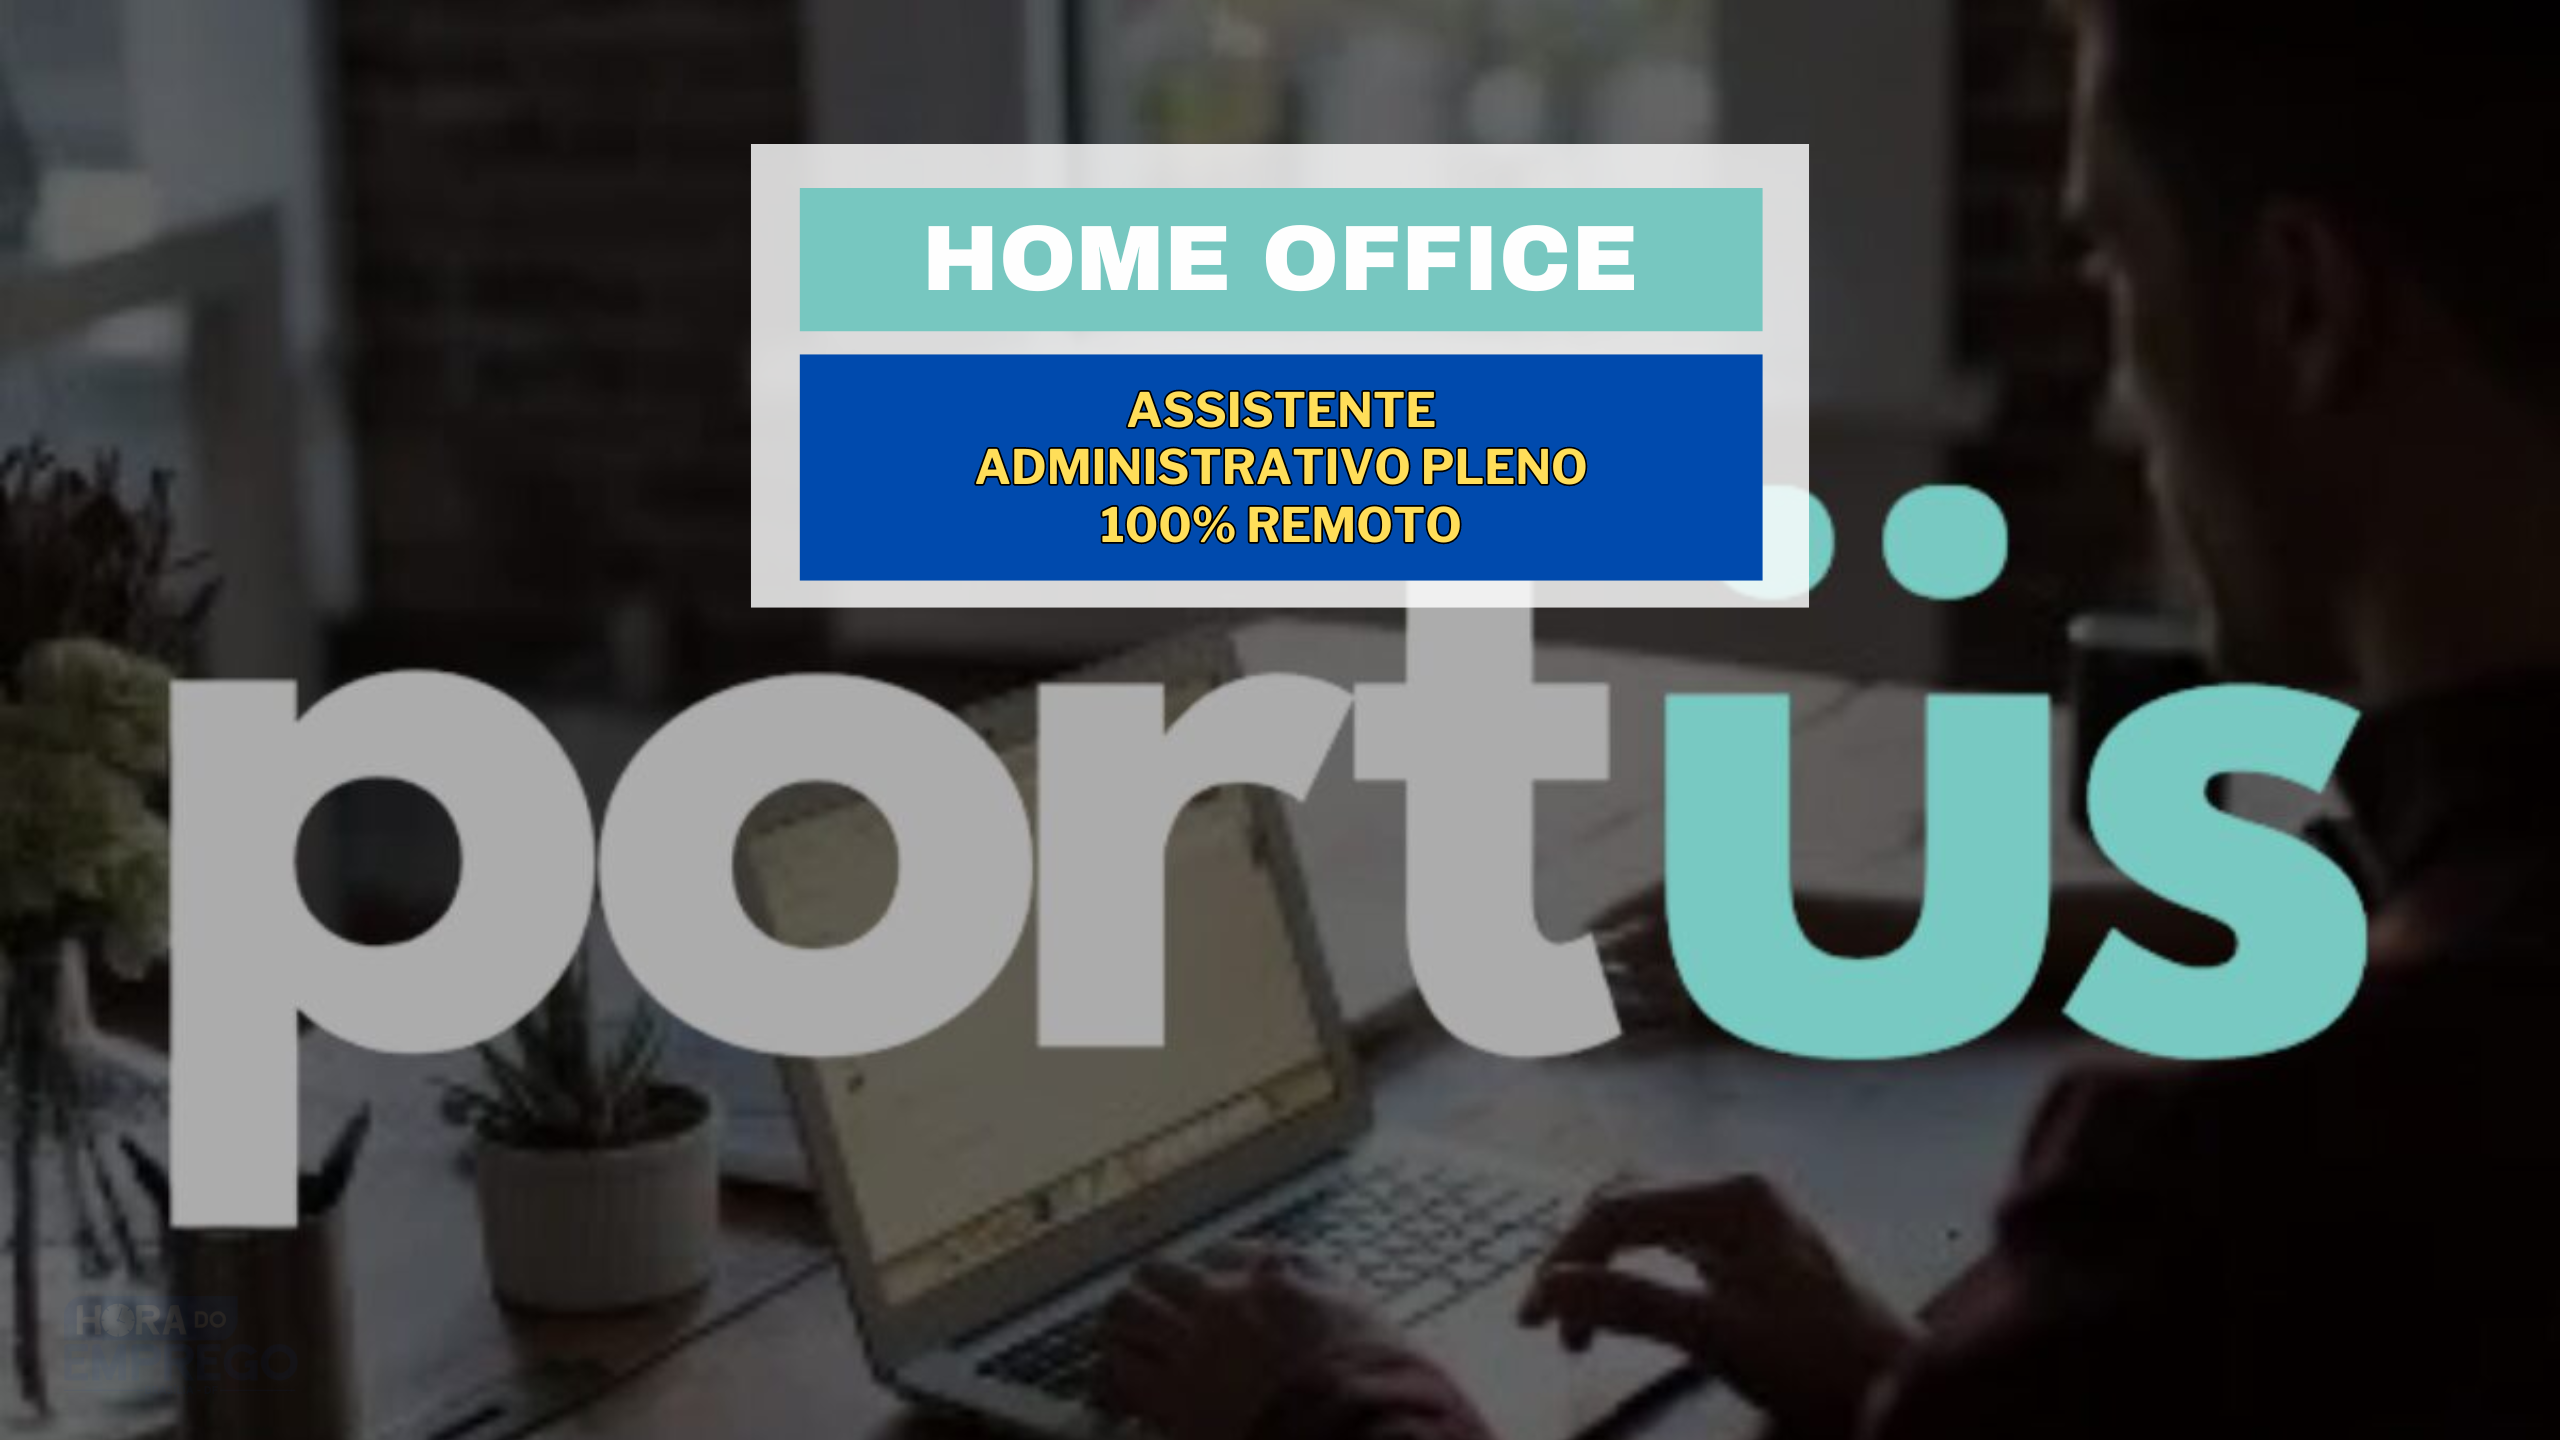 Trabalhe de Casa: Portüs Digital abriu vaga HOME OFFICE para Assistente Administrativo Pleno 100% remoto